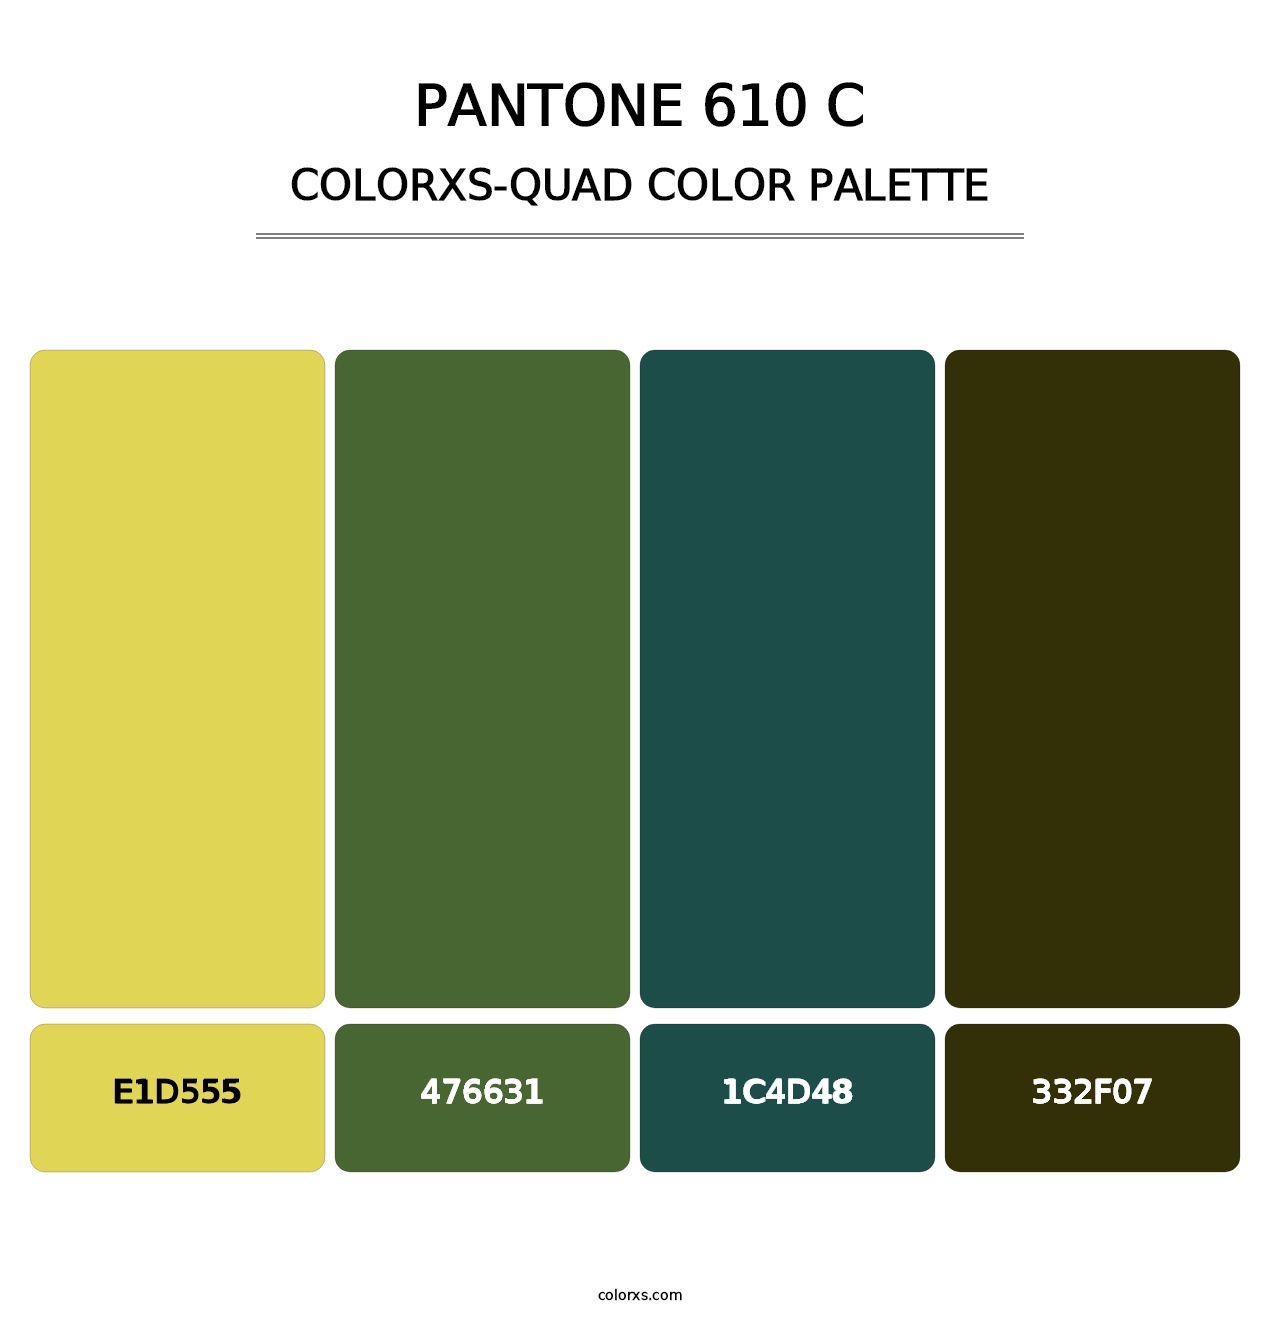 PANTONE 610 C - Colorxs Quad Palette